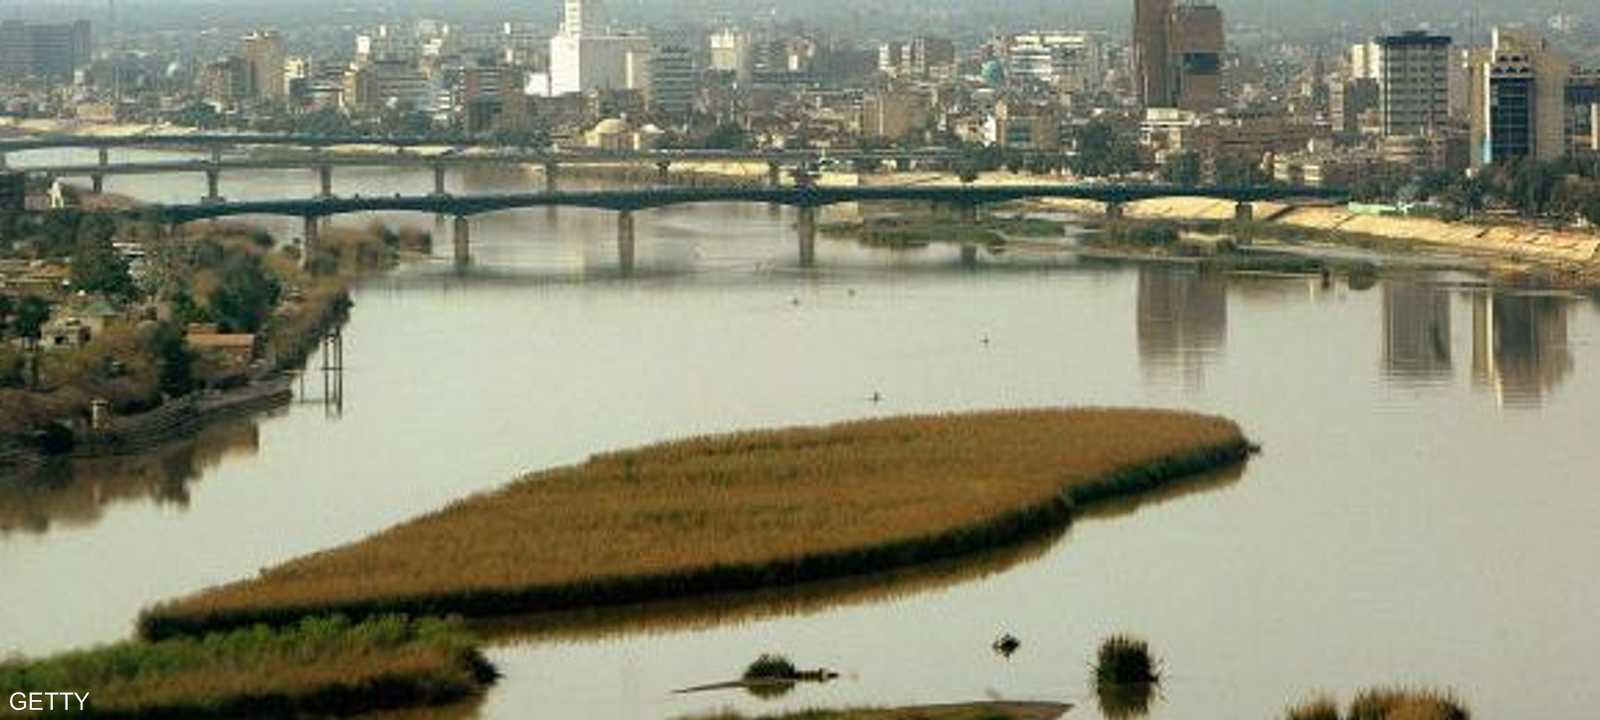 جانب من العاصمة العراقية بغداد (أرشيف)